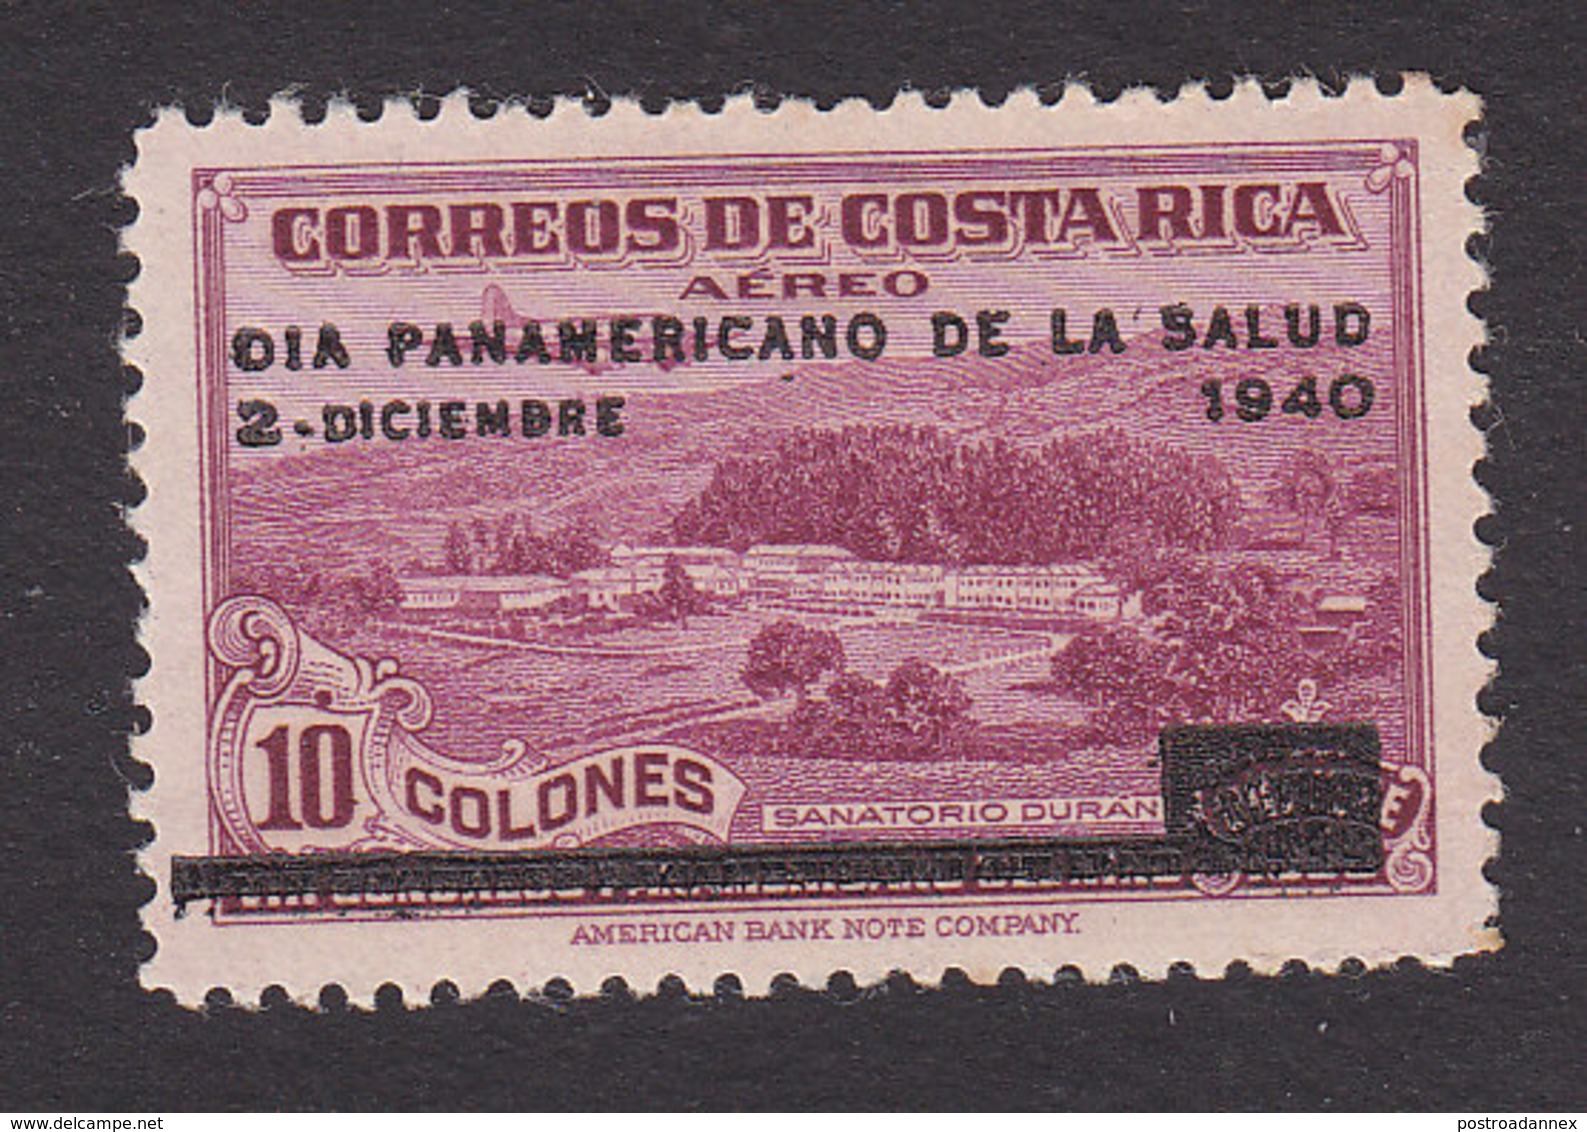 Costa Rica, Scott #C54, Mint Hinged, Duran Sanatorium, Issued 1940 - Costa Rica